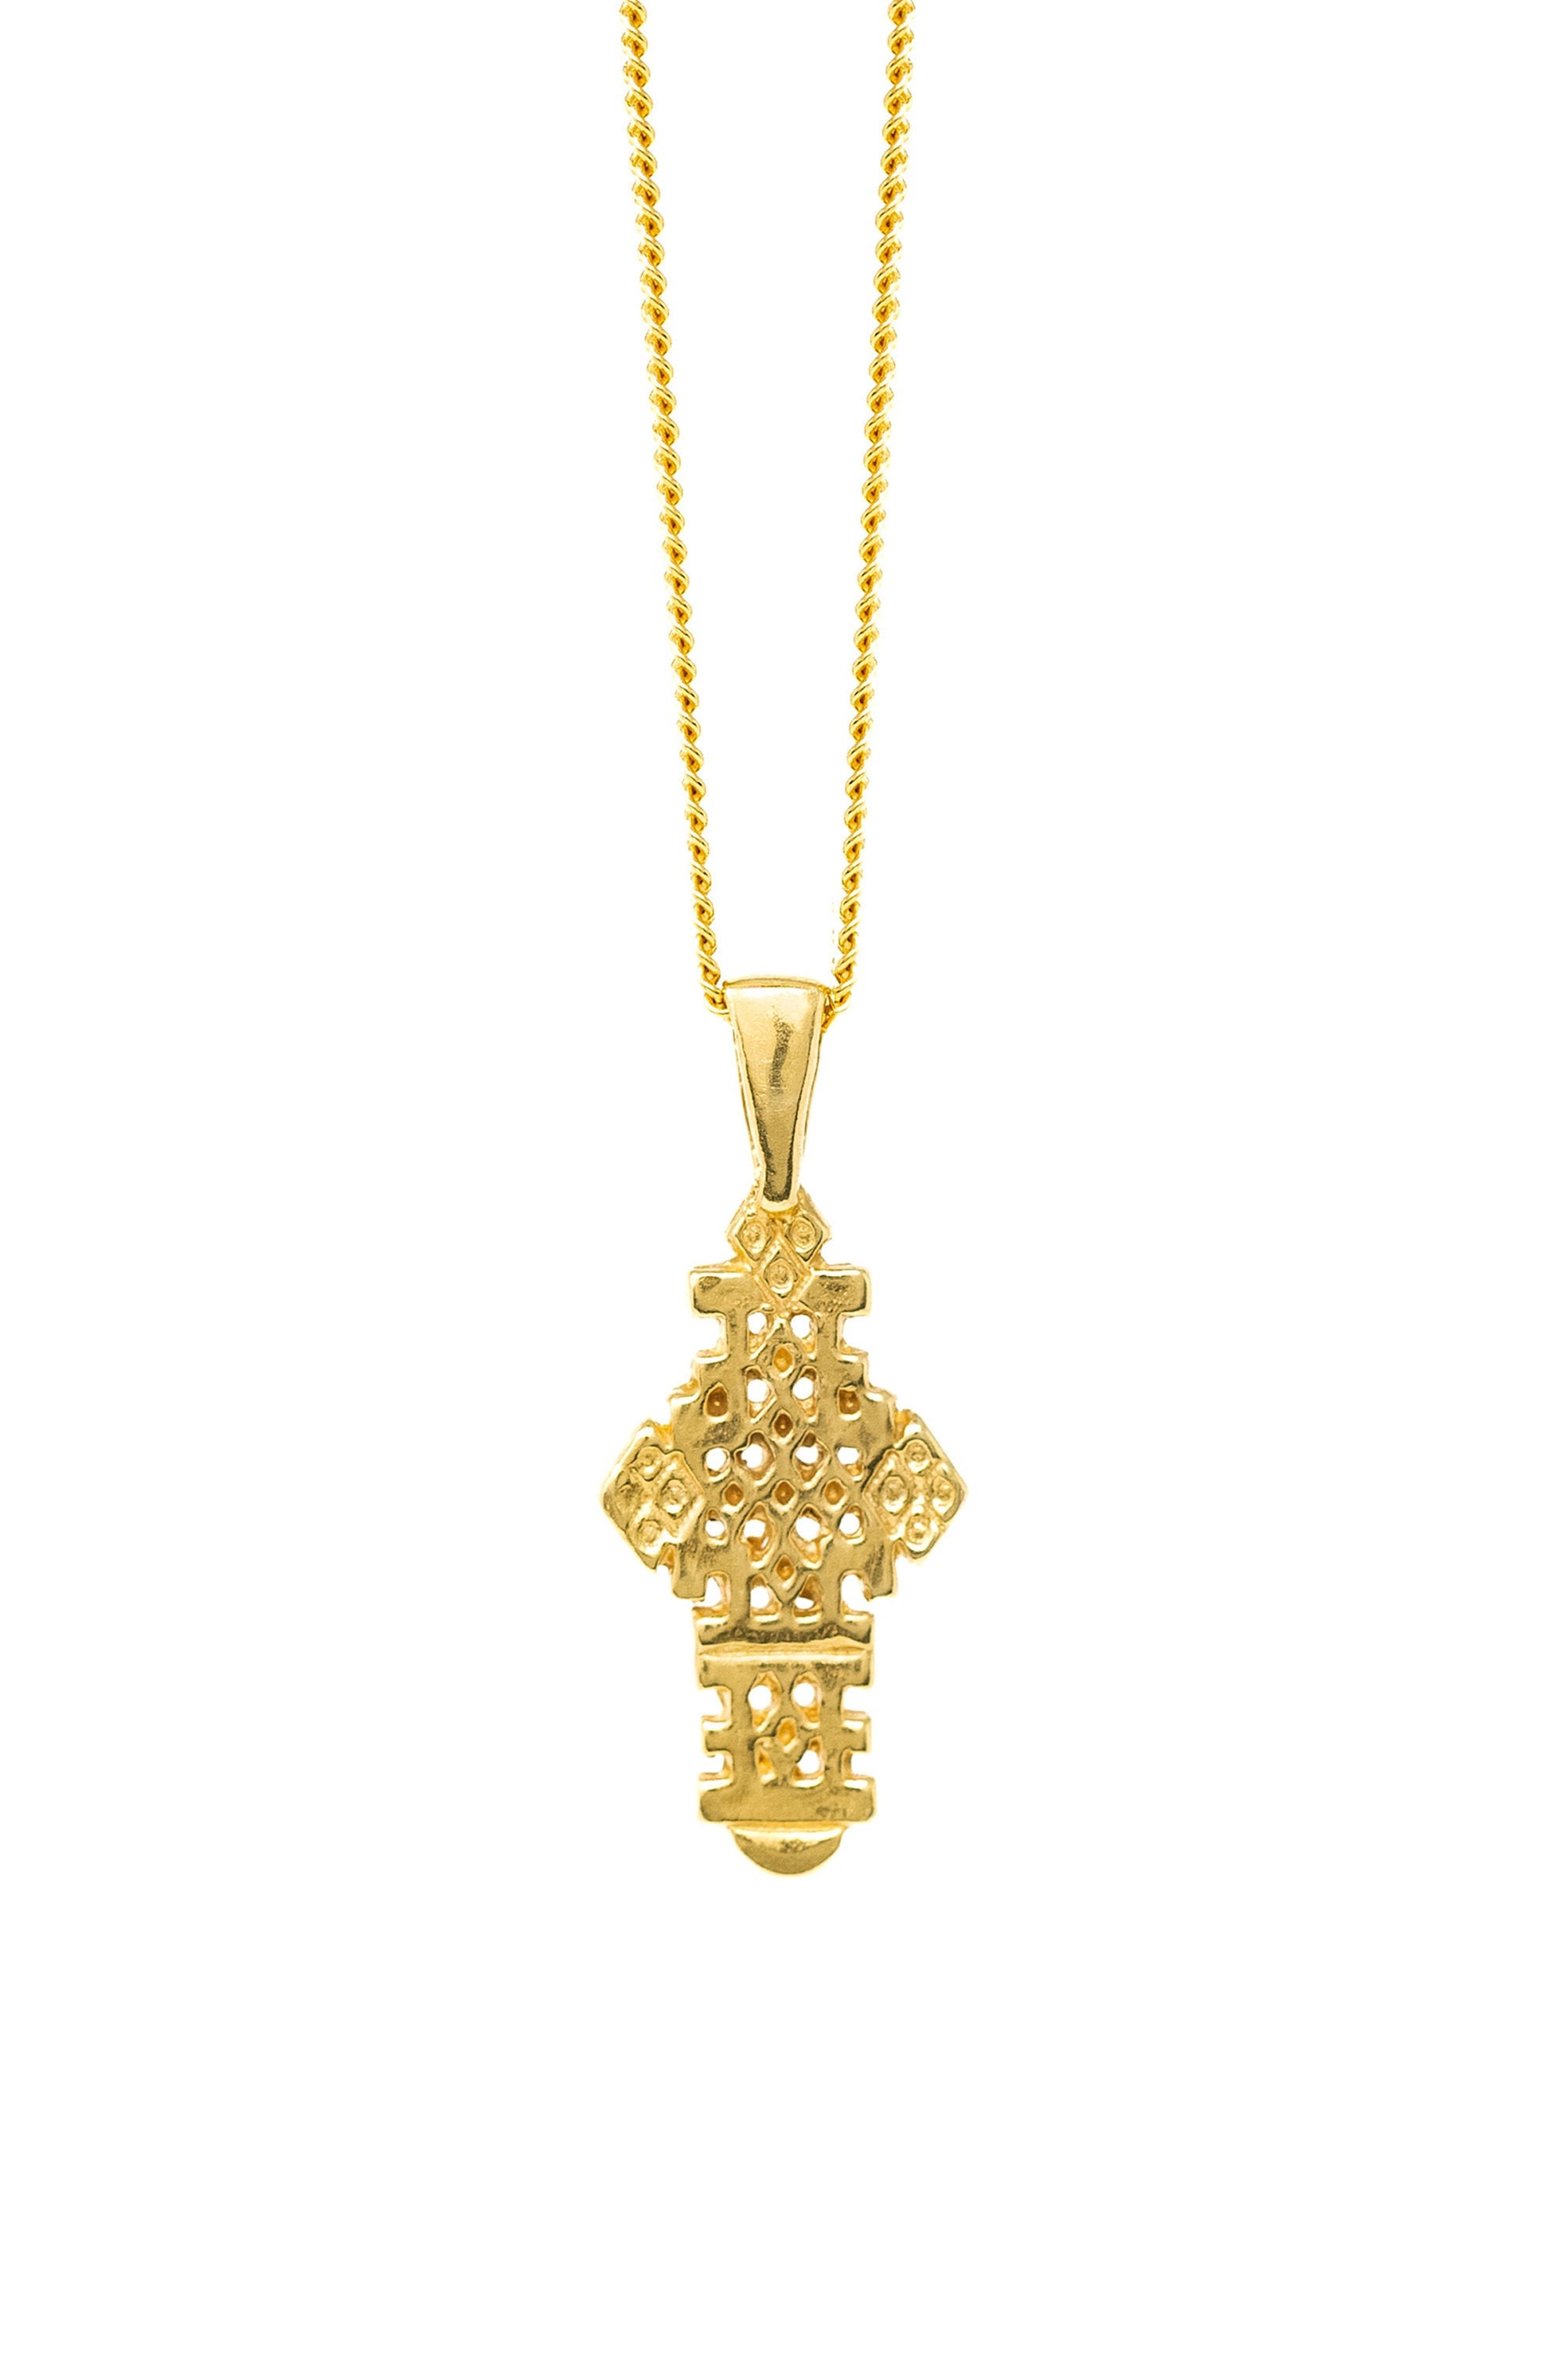 THE ETHIOPIAN Coptic Cross II Necklace 